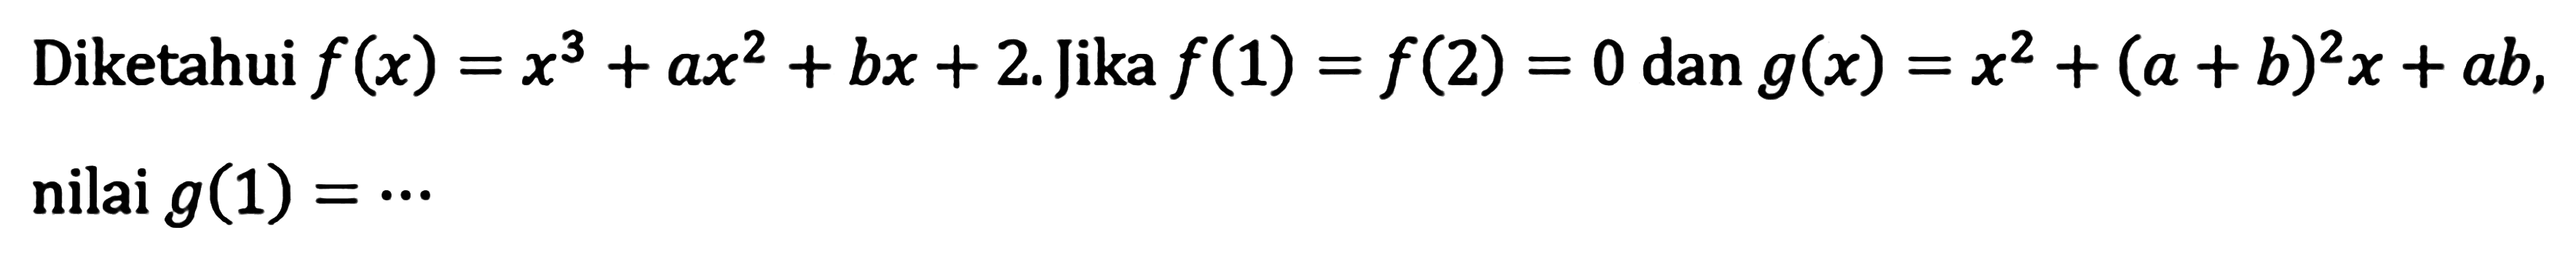 Diketahui f(x)=x^3+ax^2+bx+2. Jika f(1)=f(2)=0 dan g(x)=x^2+(a+b)^2 x+ab, nilai g(1)= ...